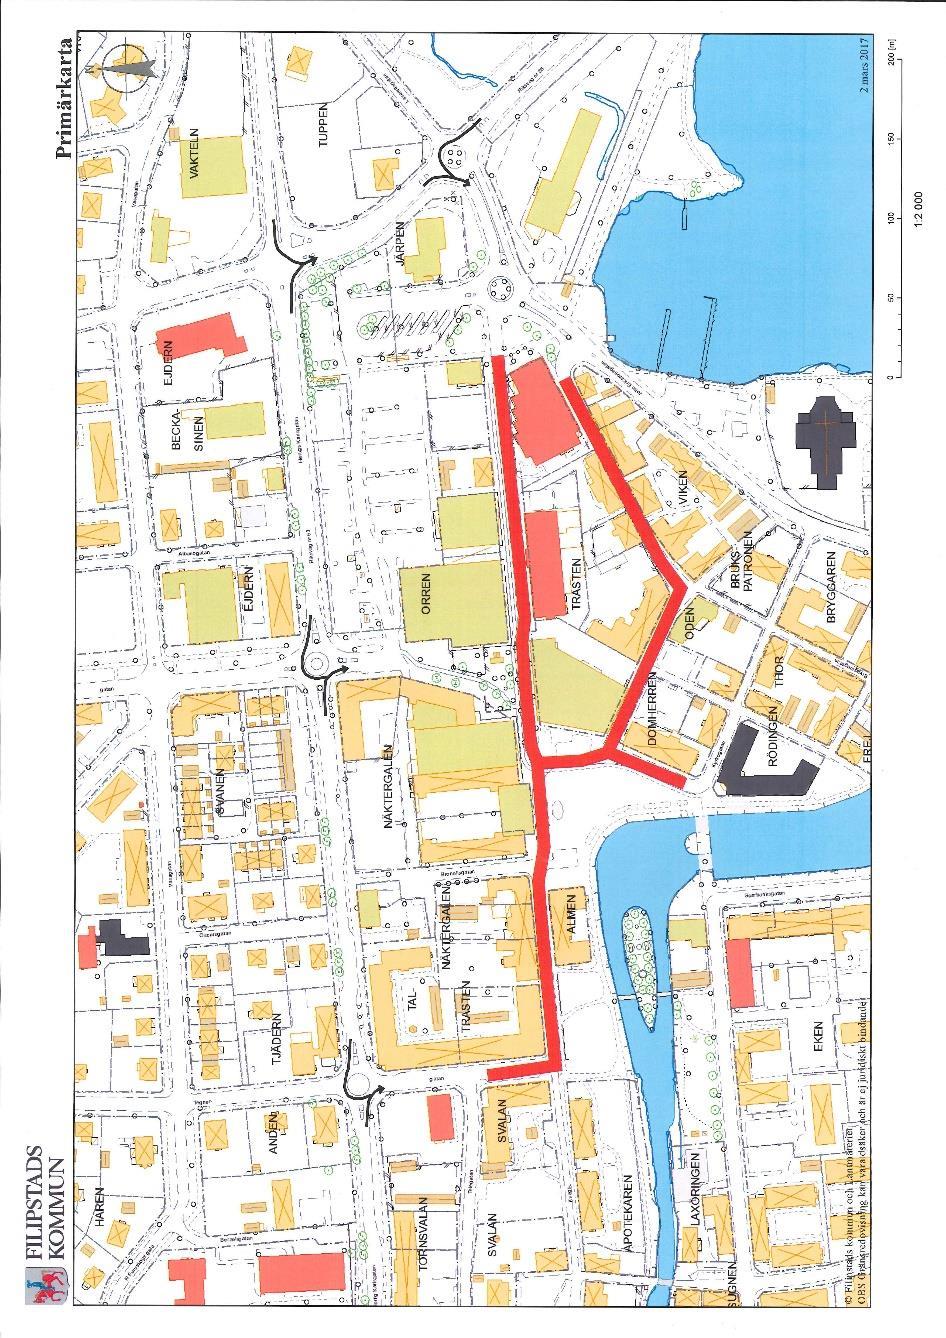 Fastighetsägare i centrumkärnan, finns lättillgängliga i kommunens fastighetsägarregister. Röd markering visar flödet av människor i Centrumkärnan.